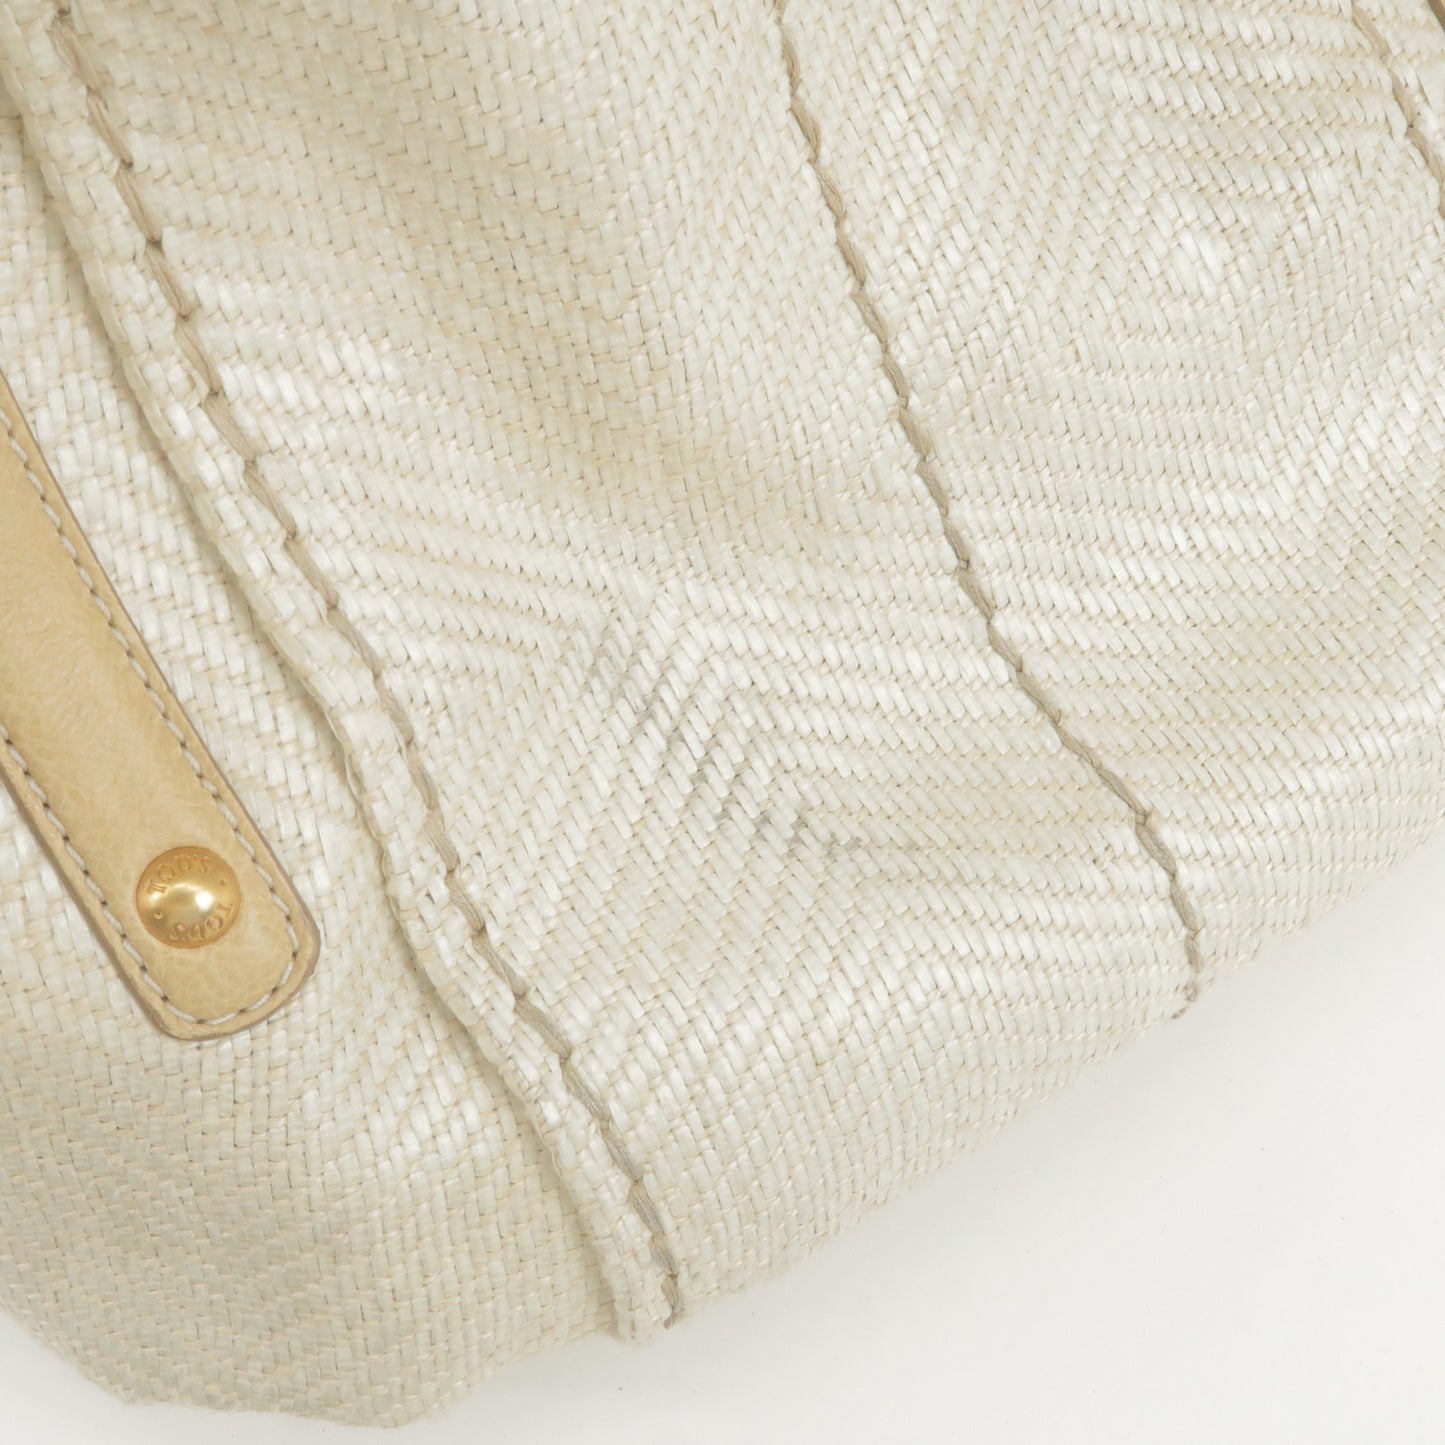 TOD'S Straw Leather 2Way Bag Shoulder Bag Hand Bag Ivory